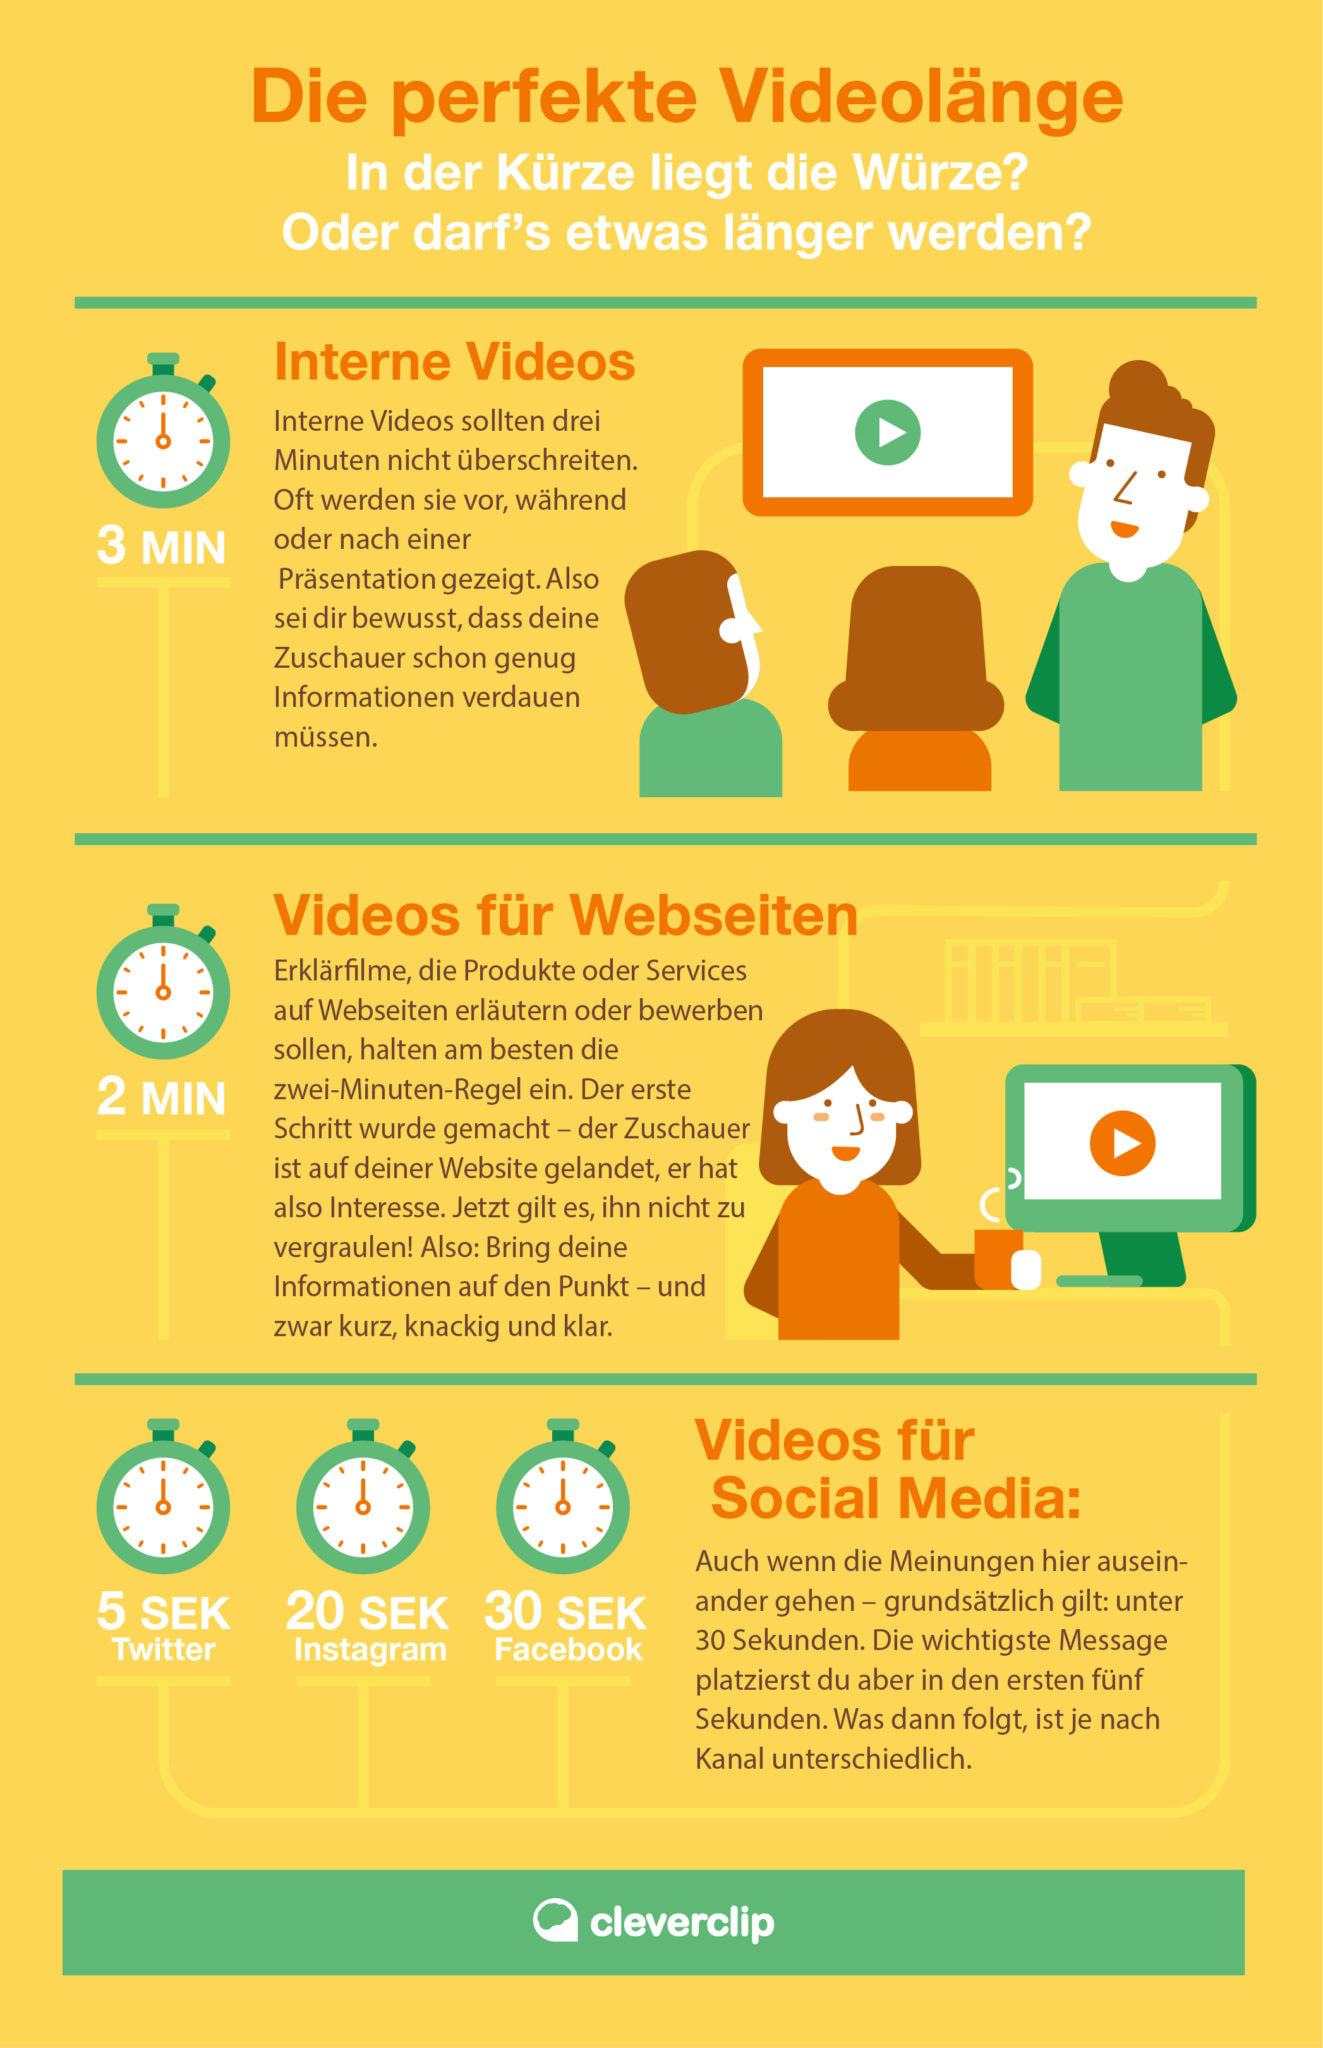 Erklärung zur perfekten Videolänge anhand von Beispielen wie internen Videos, Videos für Websites und Videos für Social Media